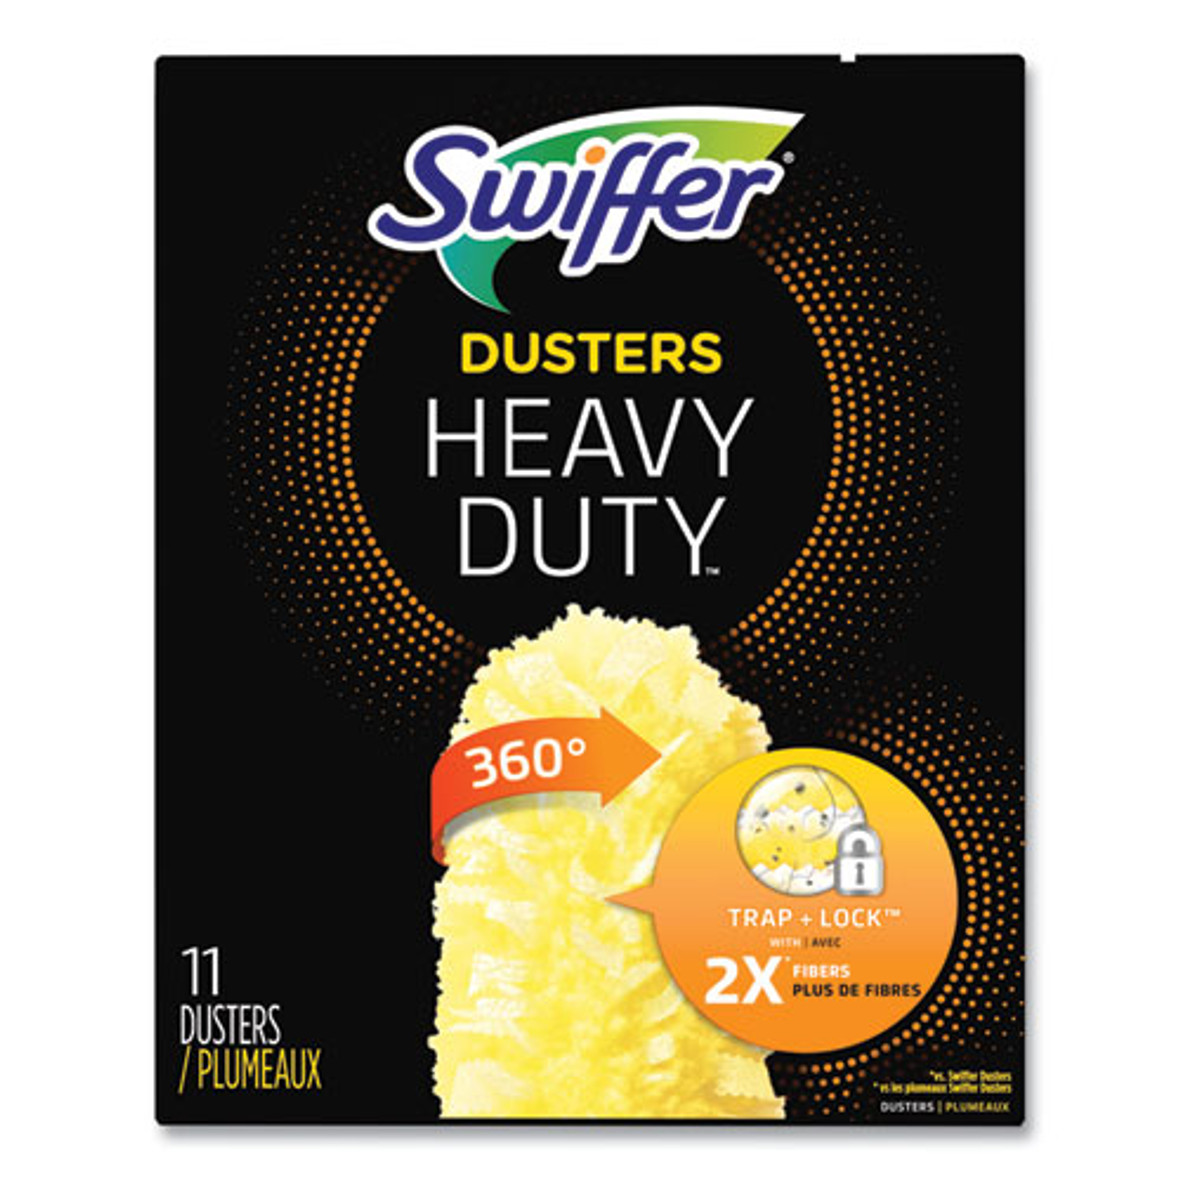 Swiffer Heavy Duty Dusters Refill, Dust Lock Fiber